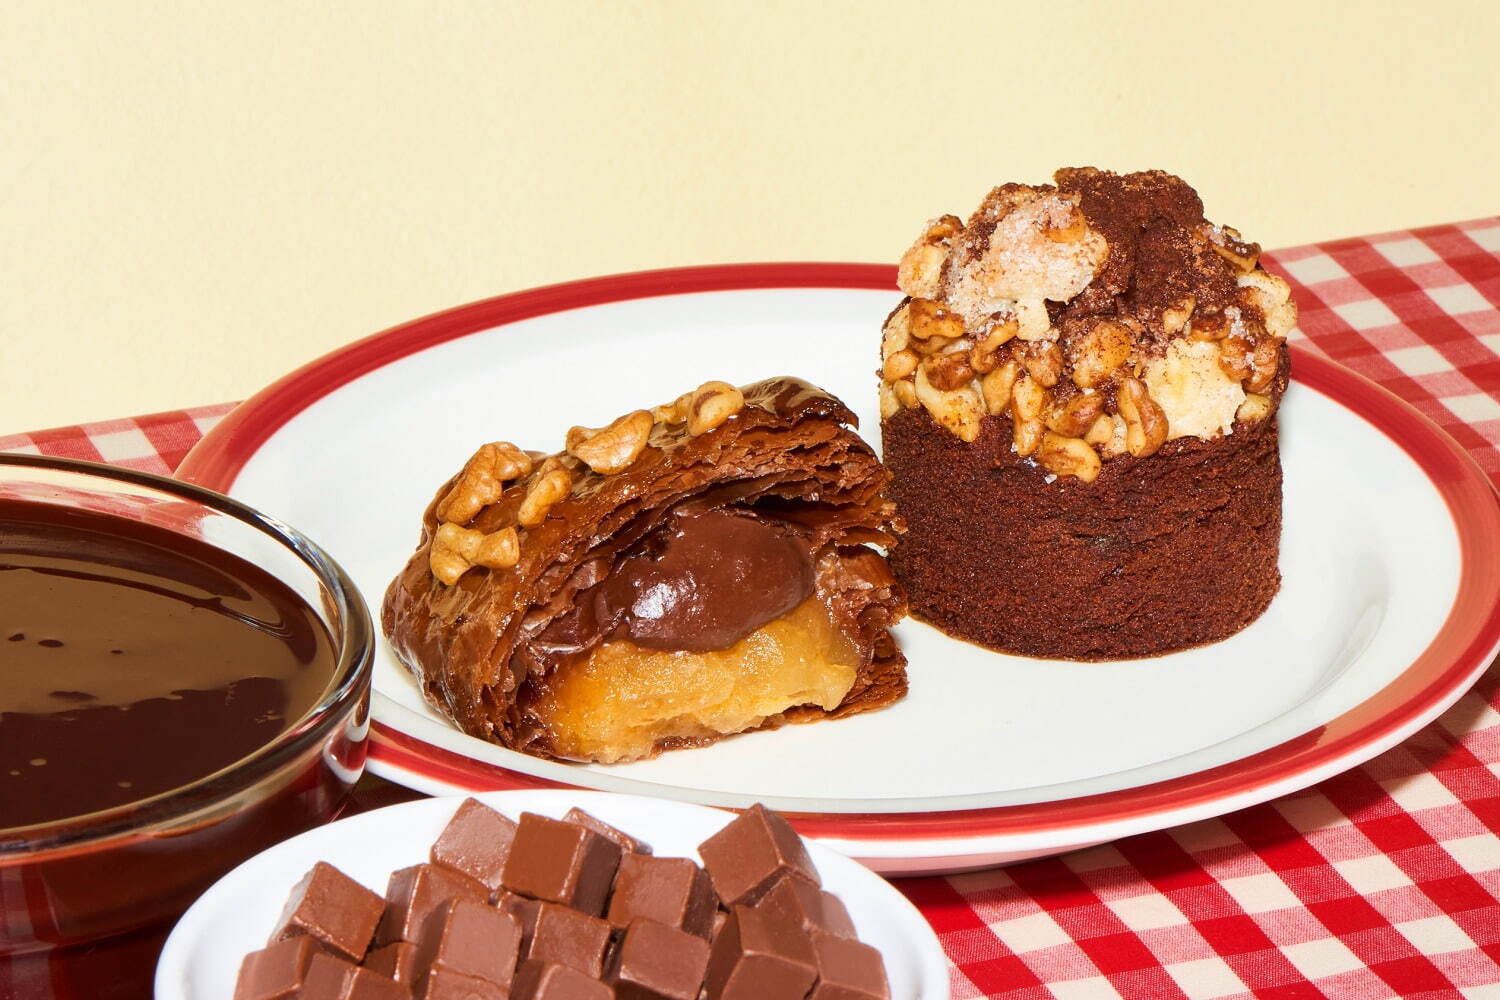 左から)「チョコレートクリームの焼きたてアップルパイ」1個 520円、「くるみとりんごのチョコパイマフィン」1個360円